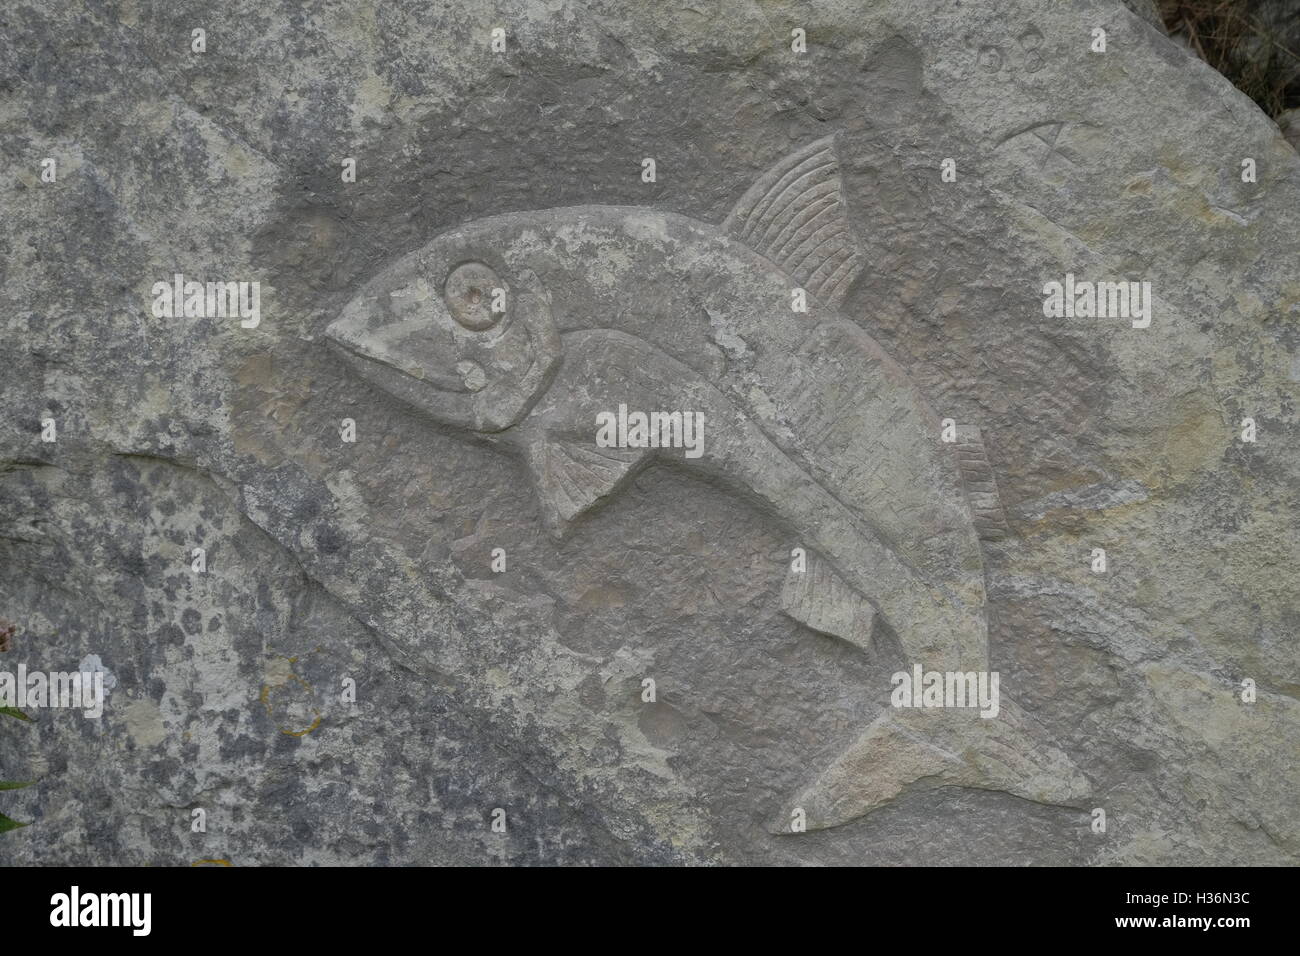 Une sculpture d'un poisson dans la pierre de Portland. Prises dans la carrière de tout parc de sculptures, Portland, Dorset. Banque D'Images